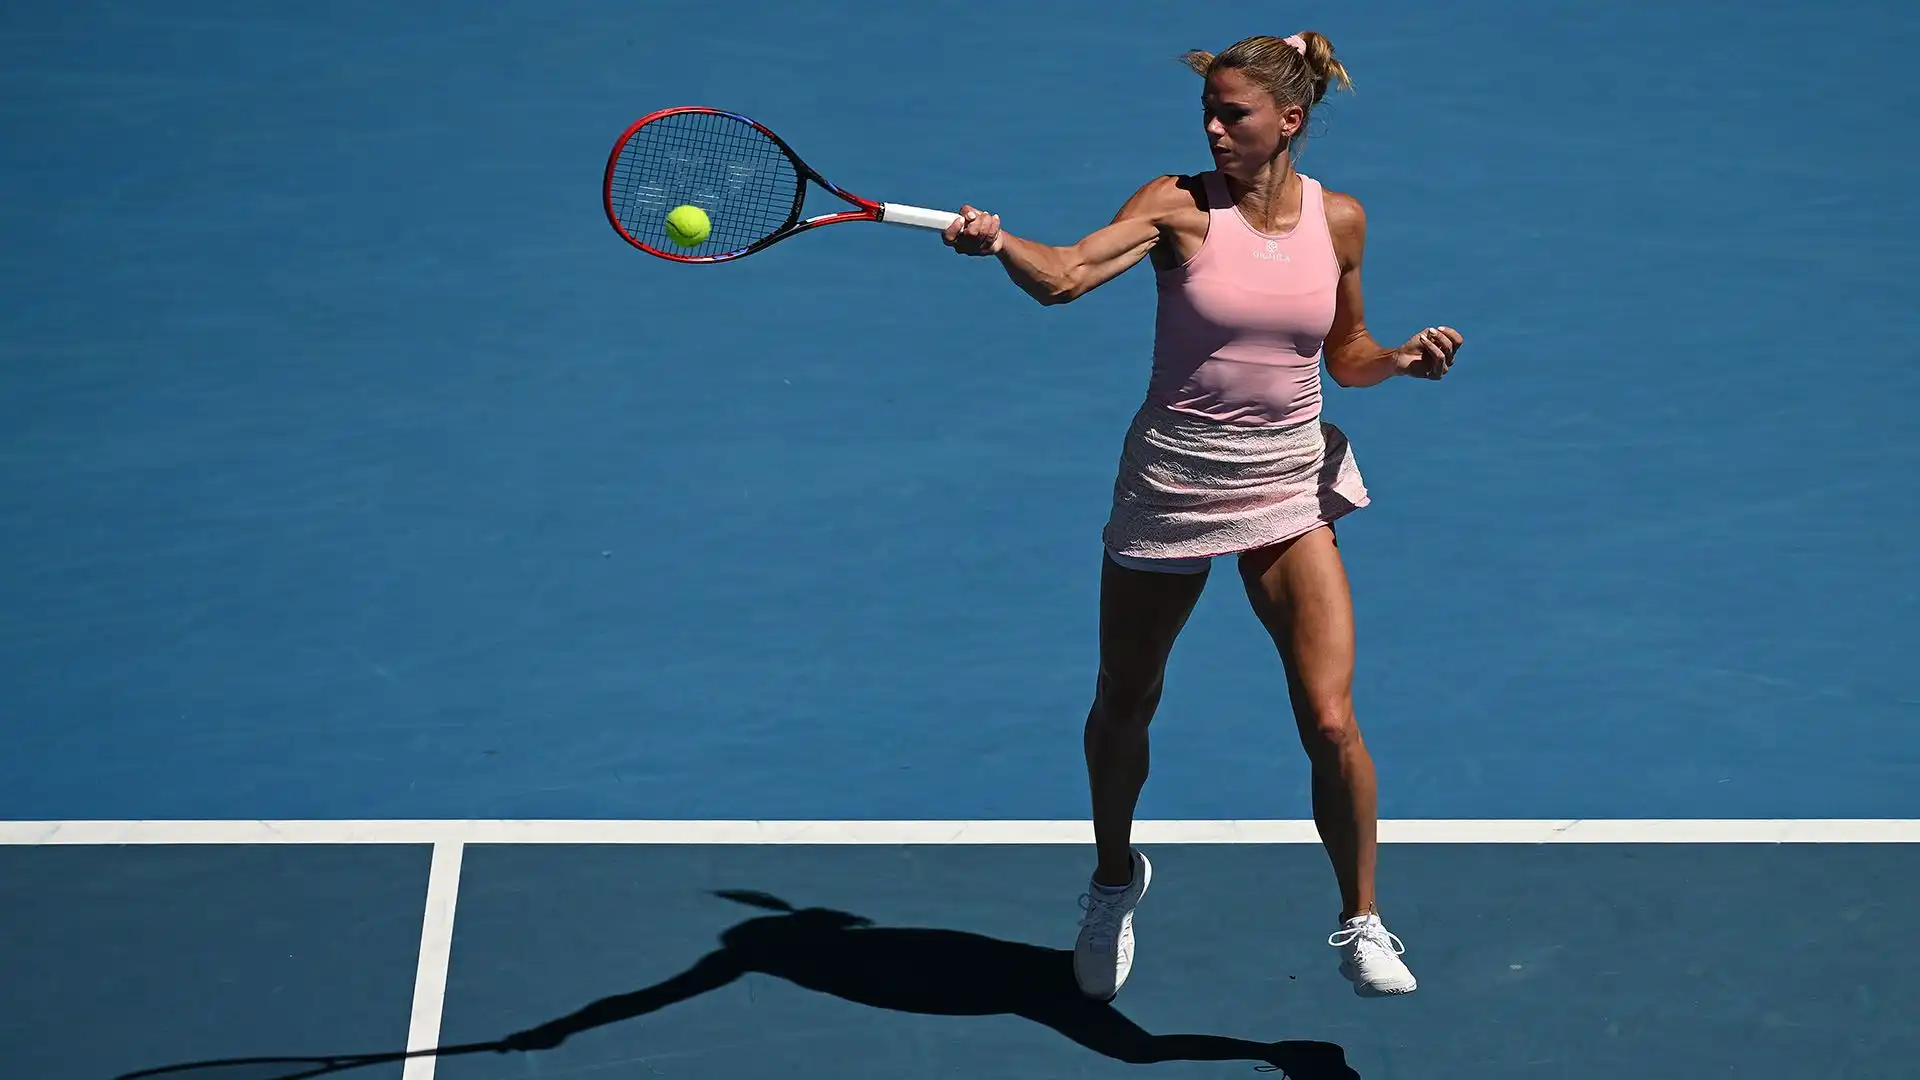 La tennista maceratese è stata sconfitta in tre set dalla bielorussa Victoria Azarenka, già per due volte vincitrice dello Slam australiano